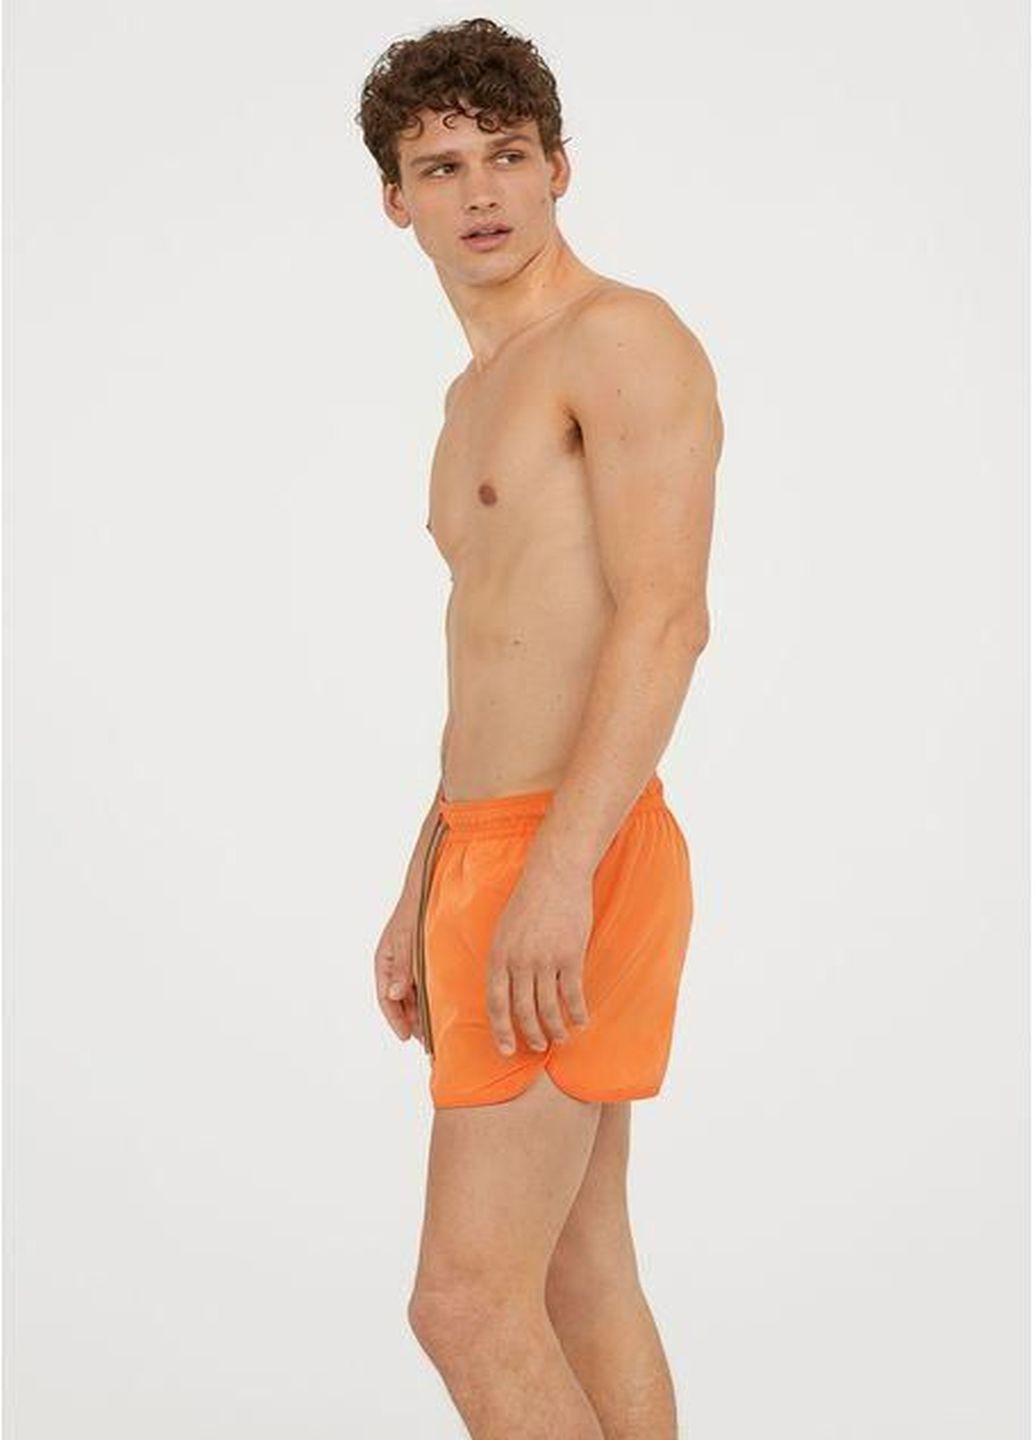 Шорты H&M однотонные оранжевые пляжные полиамид